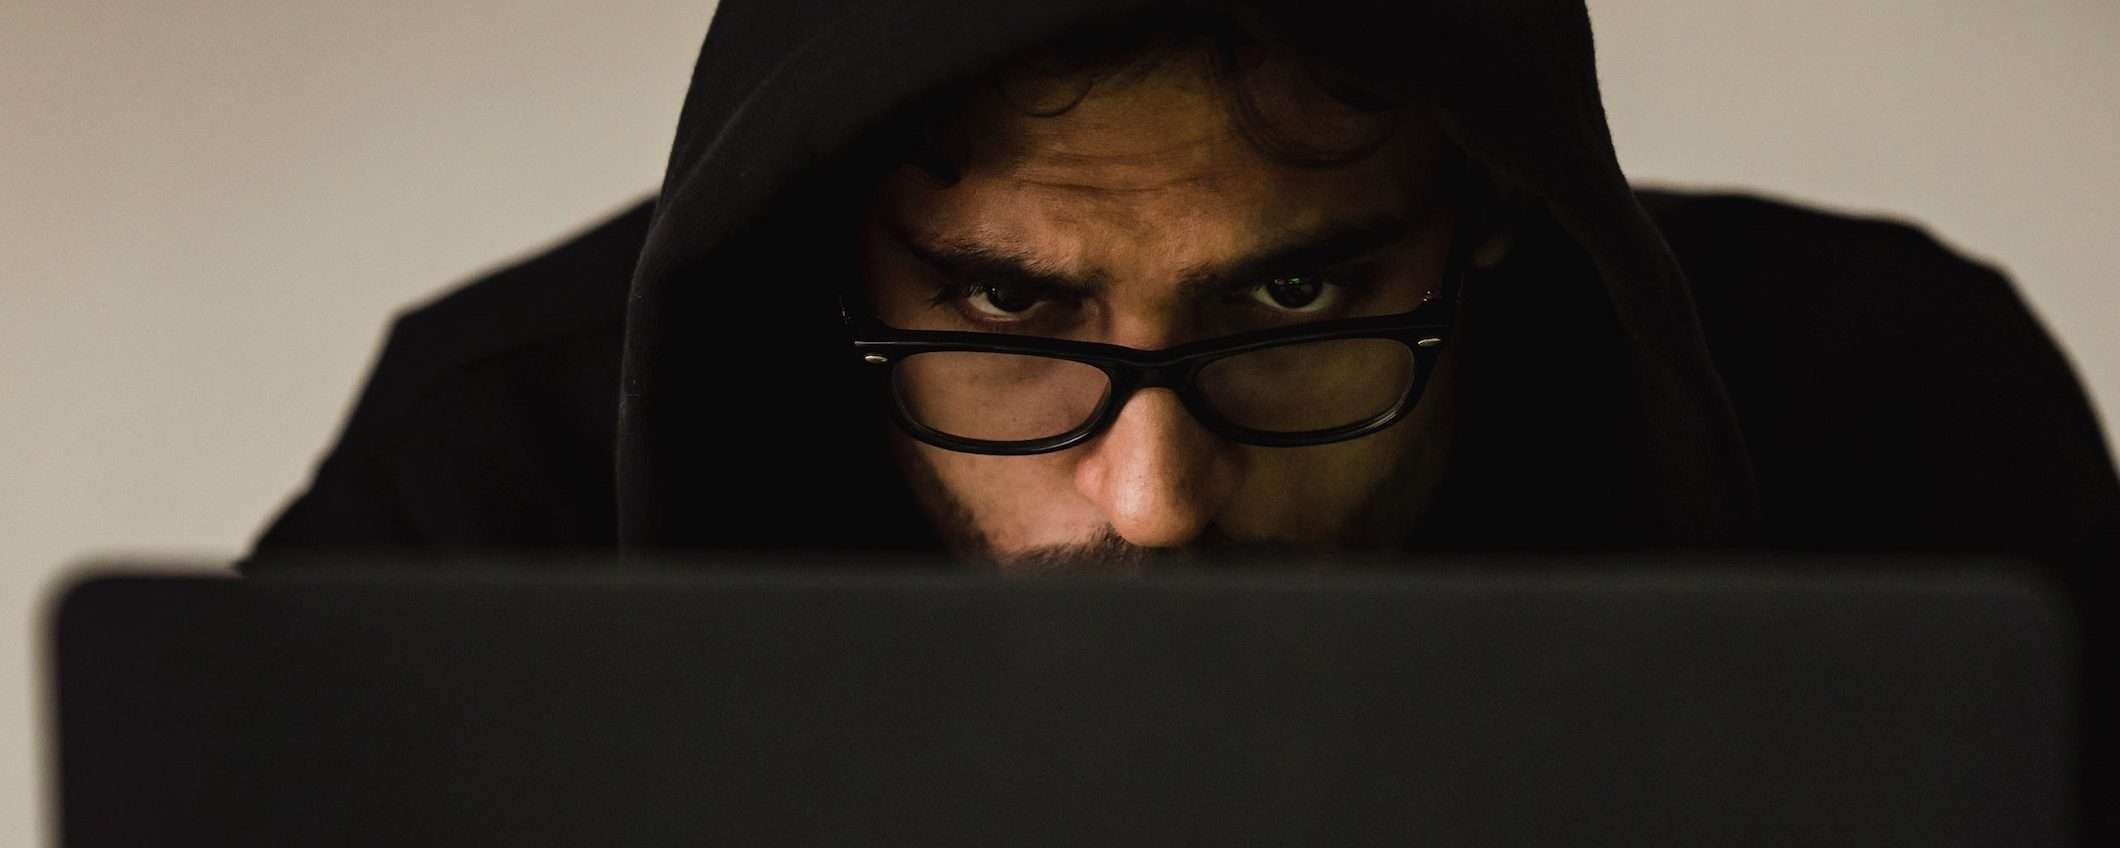 Come fanno gli hacker a nascondere i malware? Tecniche e contromosse